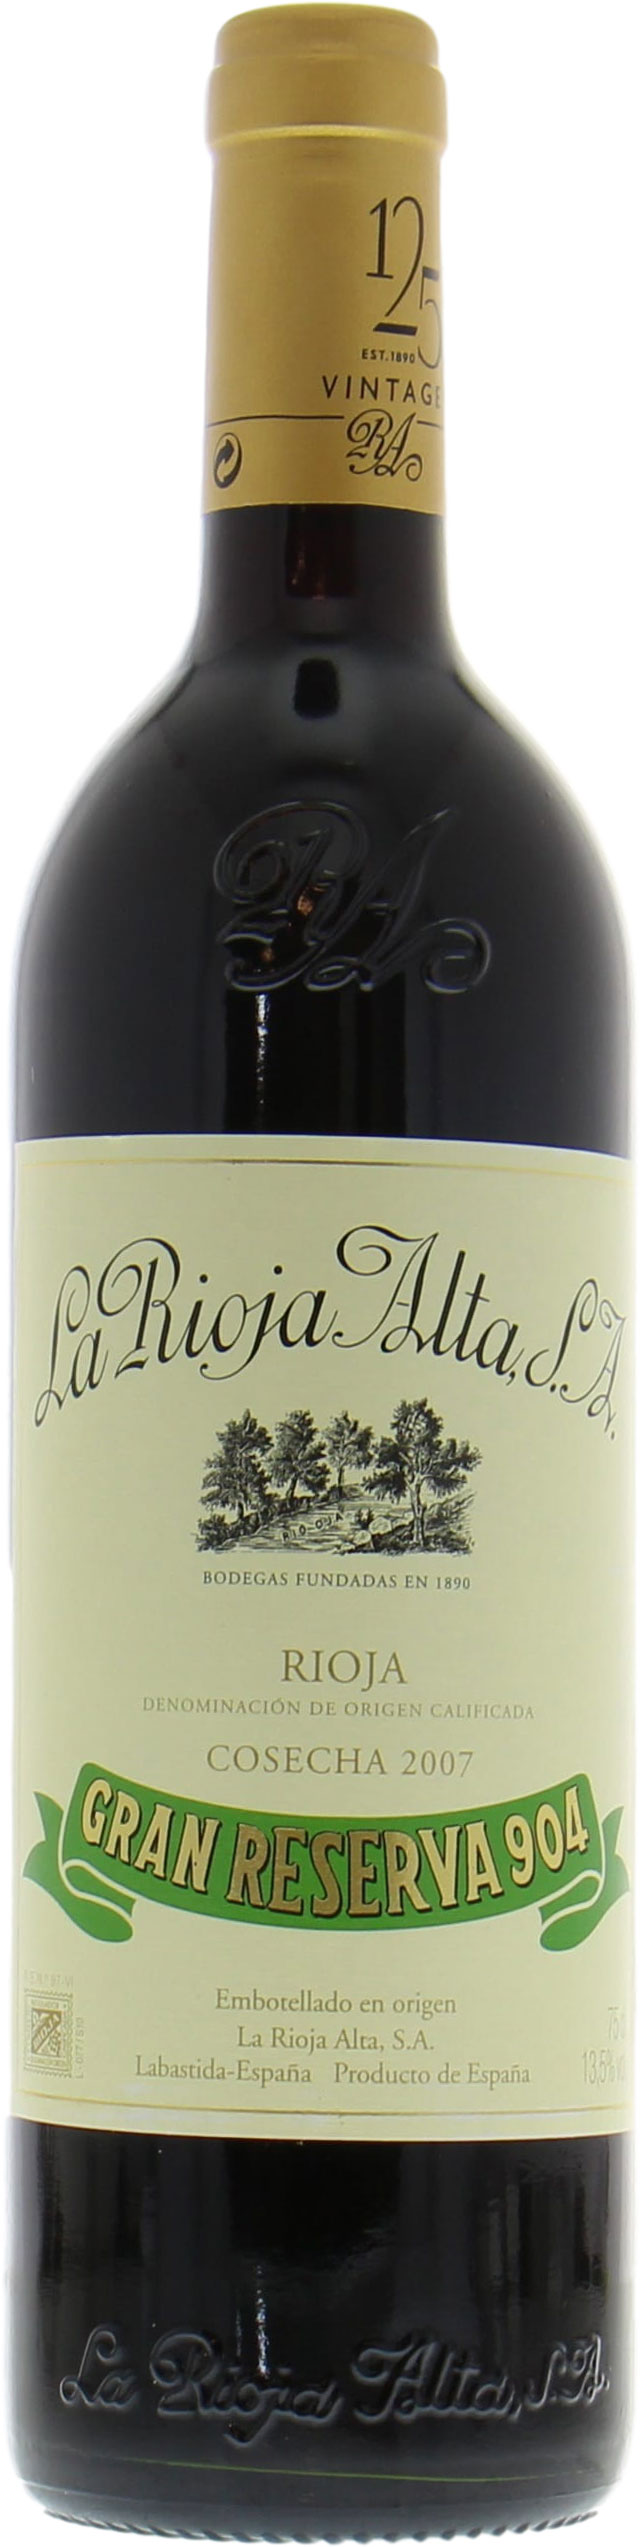 La Rioja Alta - Gran Reserva 904 2007 Perfect